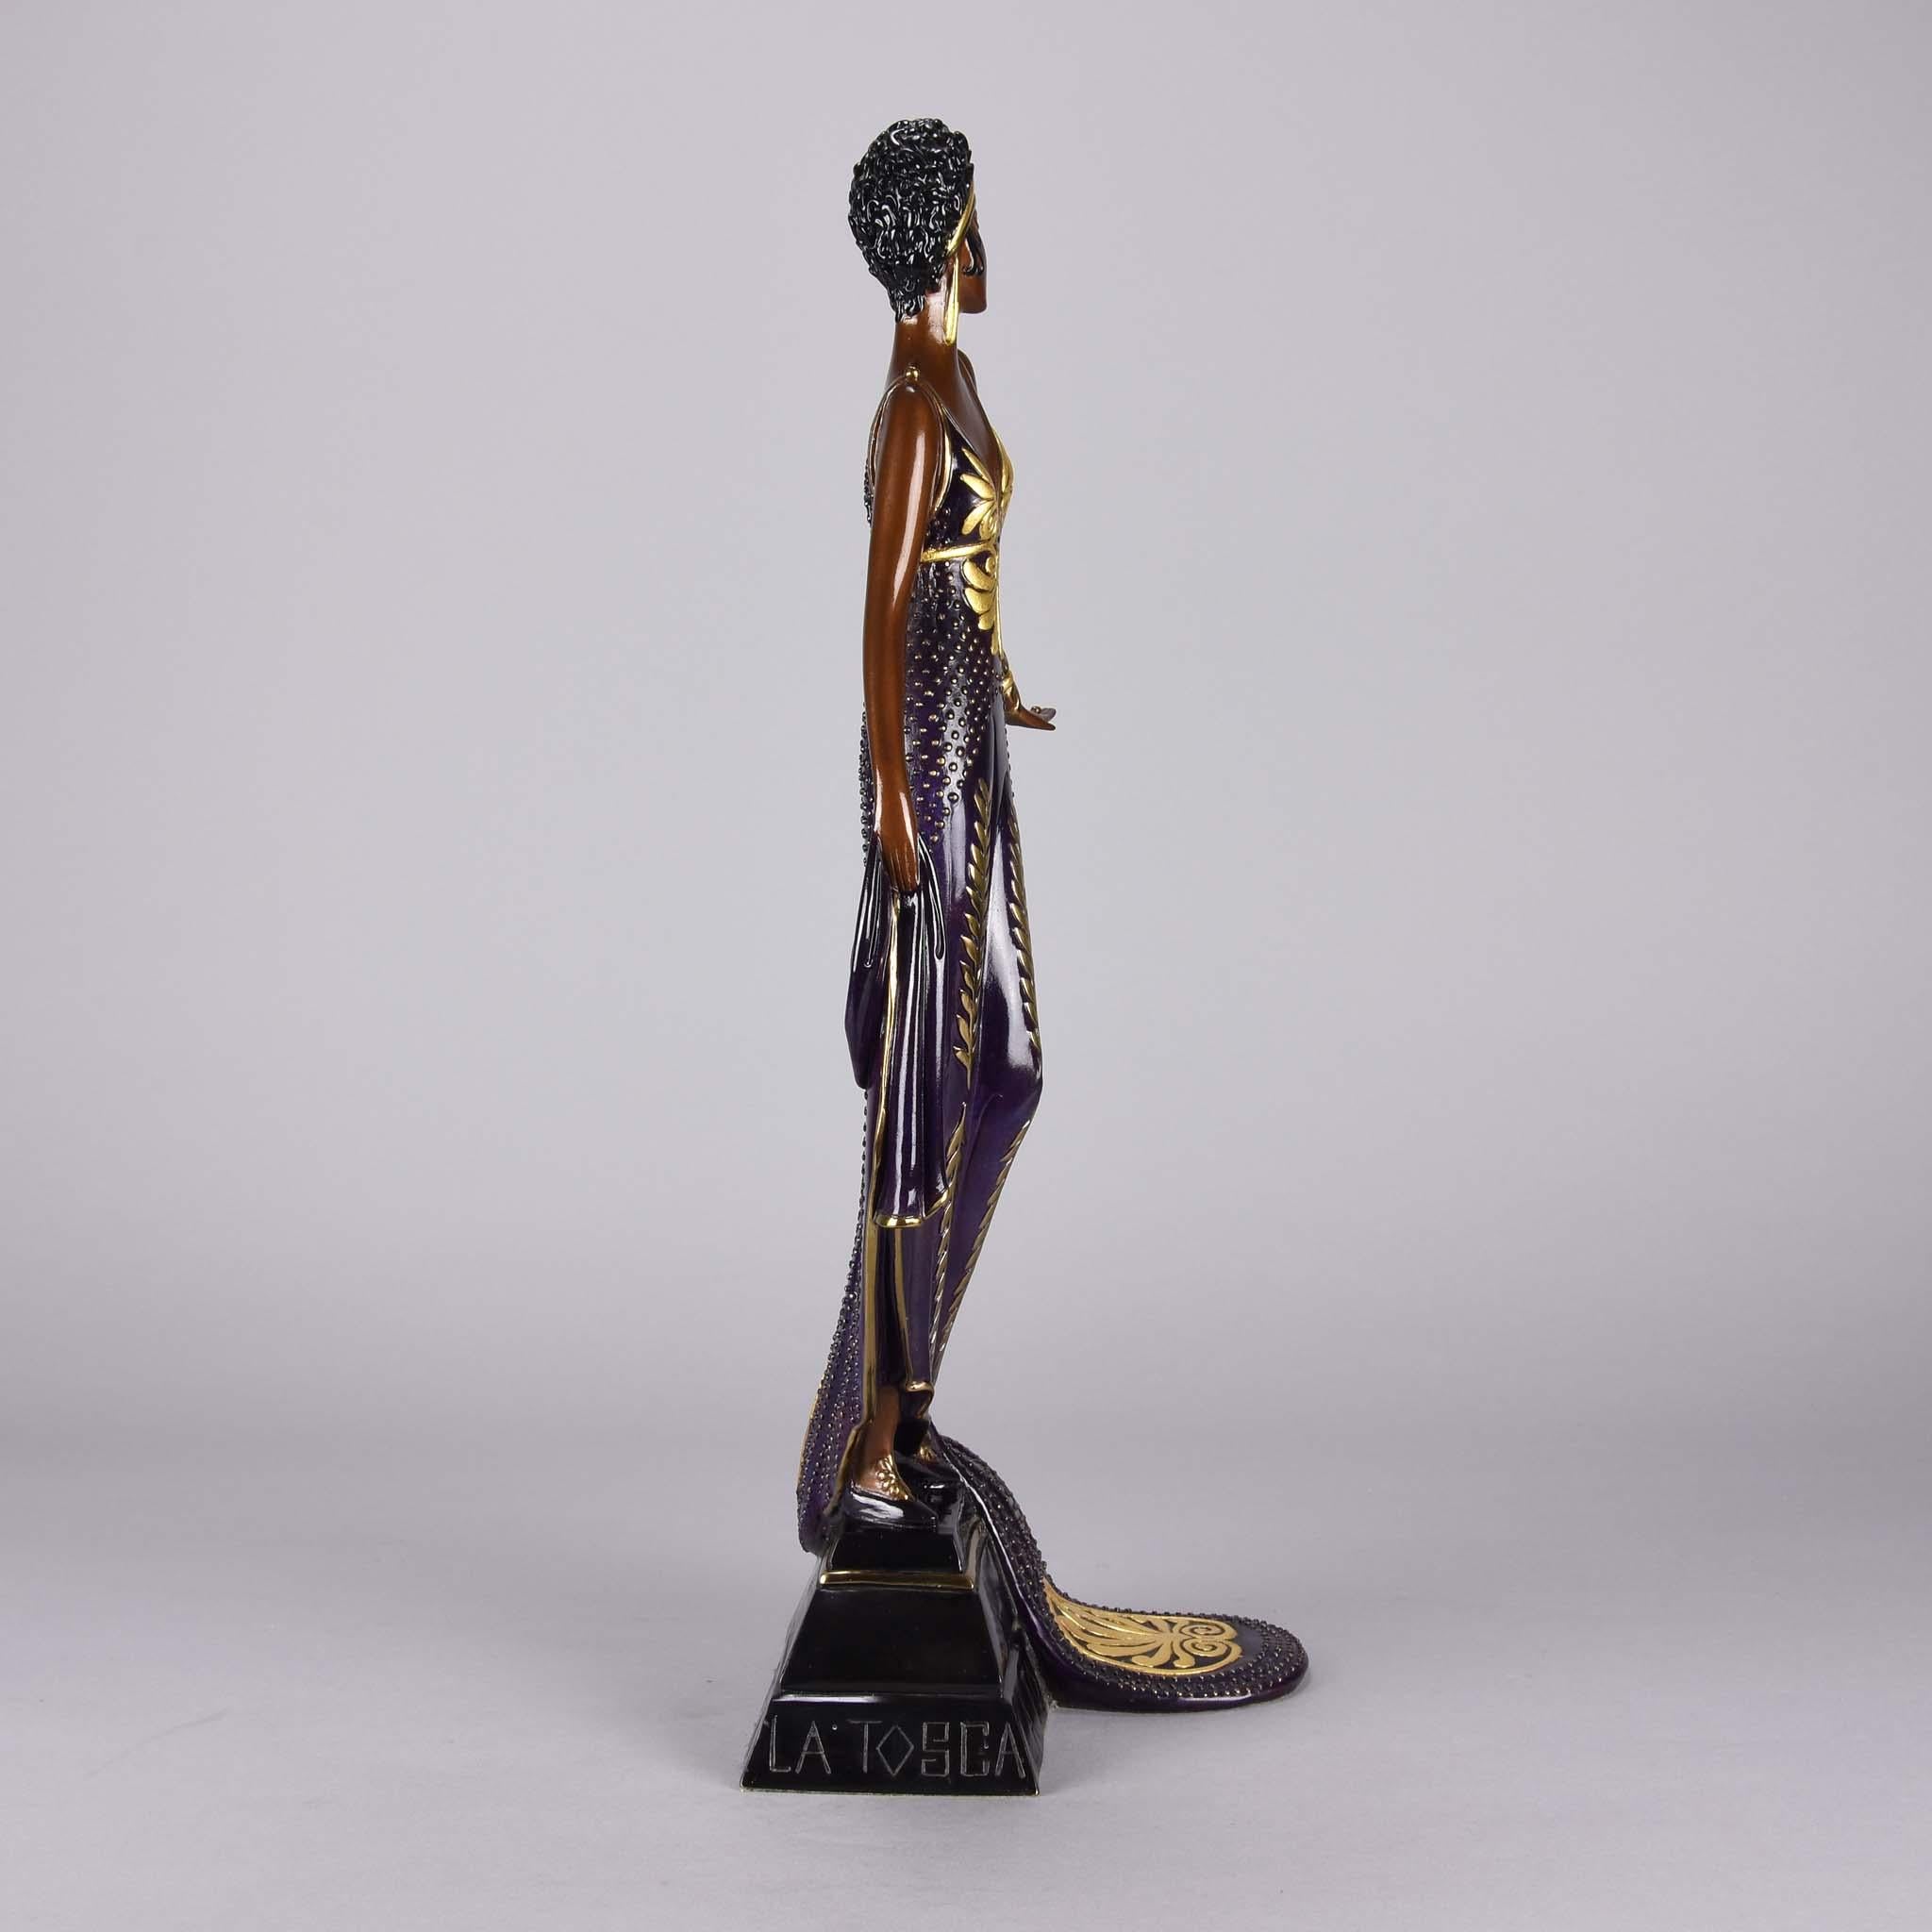 Eine attraktive, in limitierter Auflage gefertigte, kalt bemalte Art-Deco-Bronzefigur einer eleganten Schönheit in einem violetten, bodenlangen Kleid mit hervorragender Farbgebung und Detailtreue, signiert von Erté, nummeriert 145/500, datiert 1989